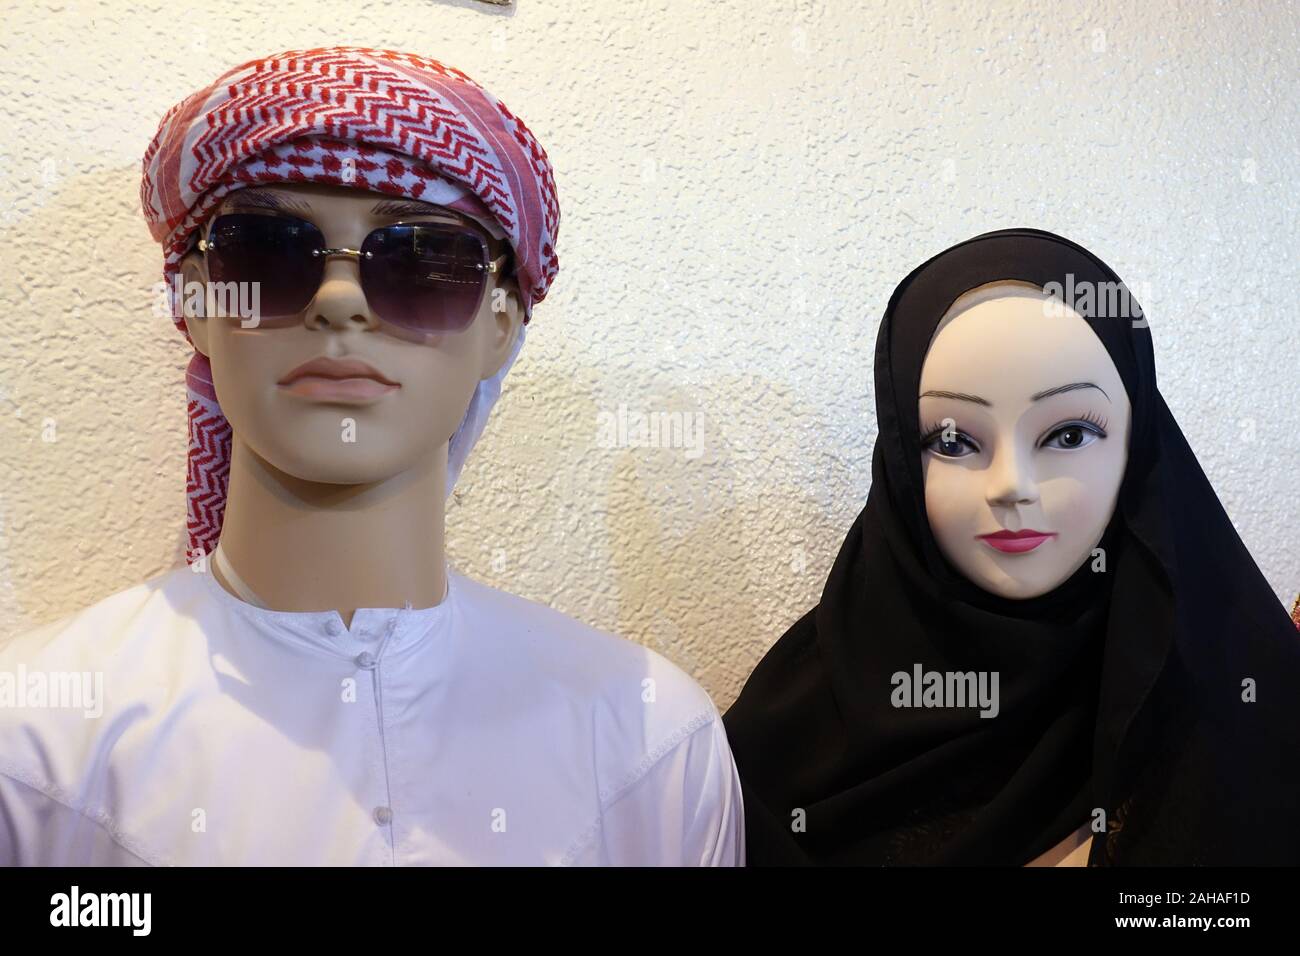 26.03.2018, Dubai, Dubai, Emiratos Árabes Unidos - maniquíes en ropa tradicional árabe. 00S180326D163CAROEX.JPG [modelo de liberación: no aplicable, PR Foto de stock